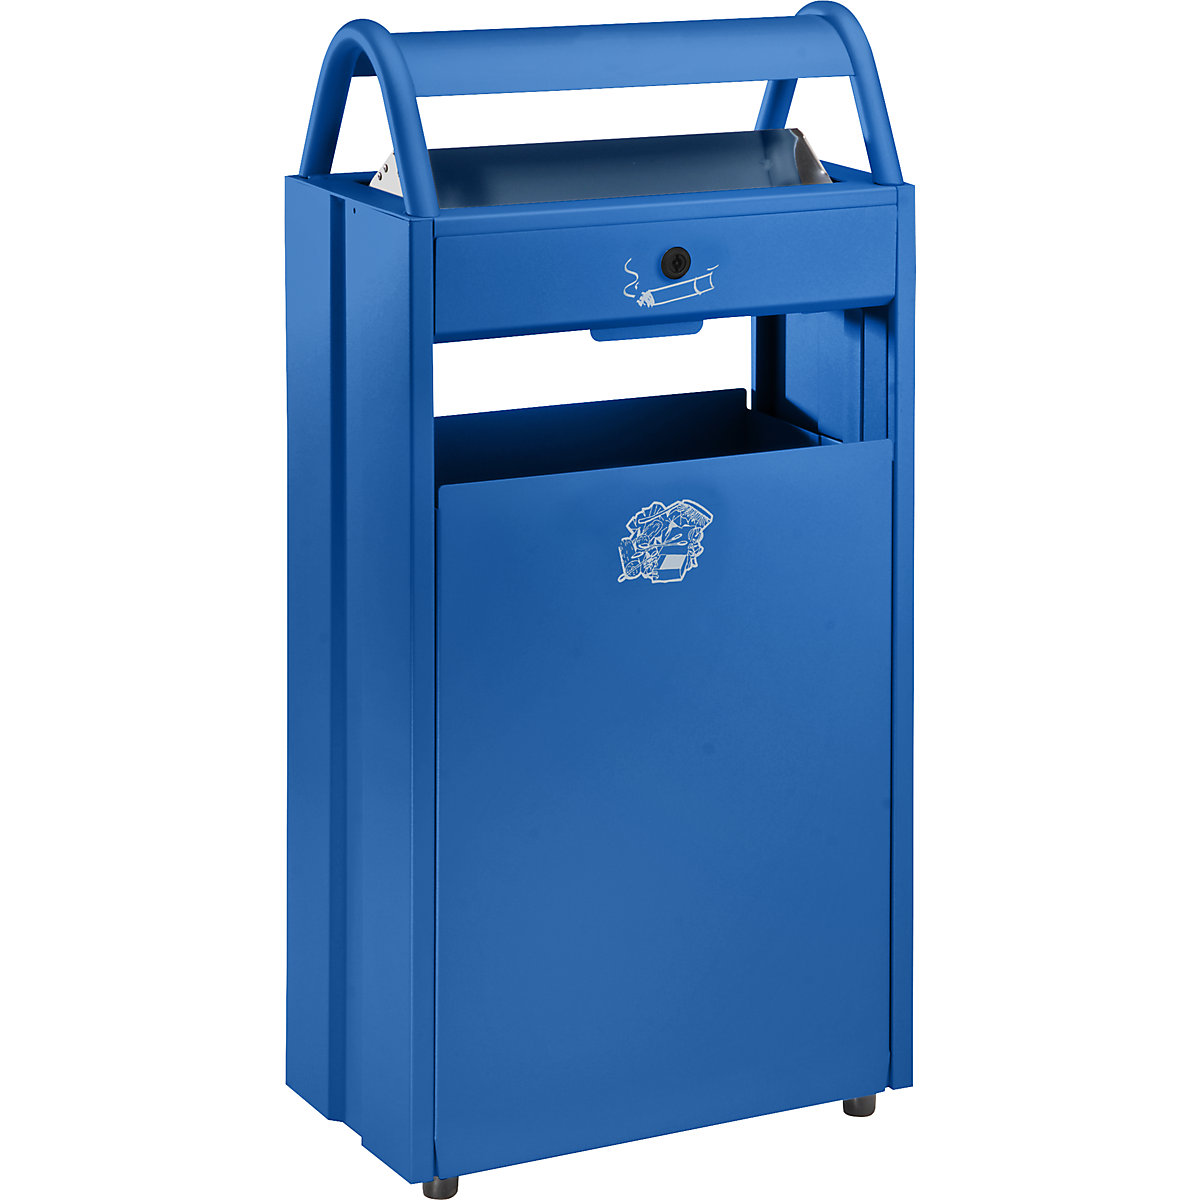 VAR – Sběrač odpadů s popelníkem a ochrannou stříškou proti dešti, objem 60 l, š x v x h 480 x 960 x 250 mm, modrá RAL 5010